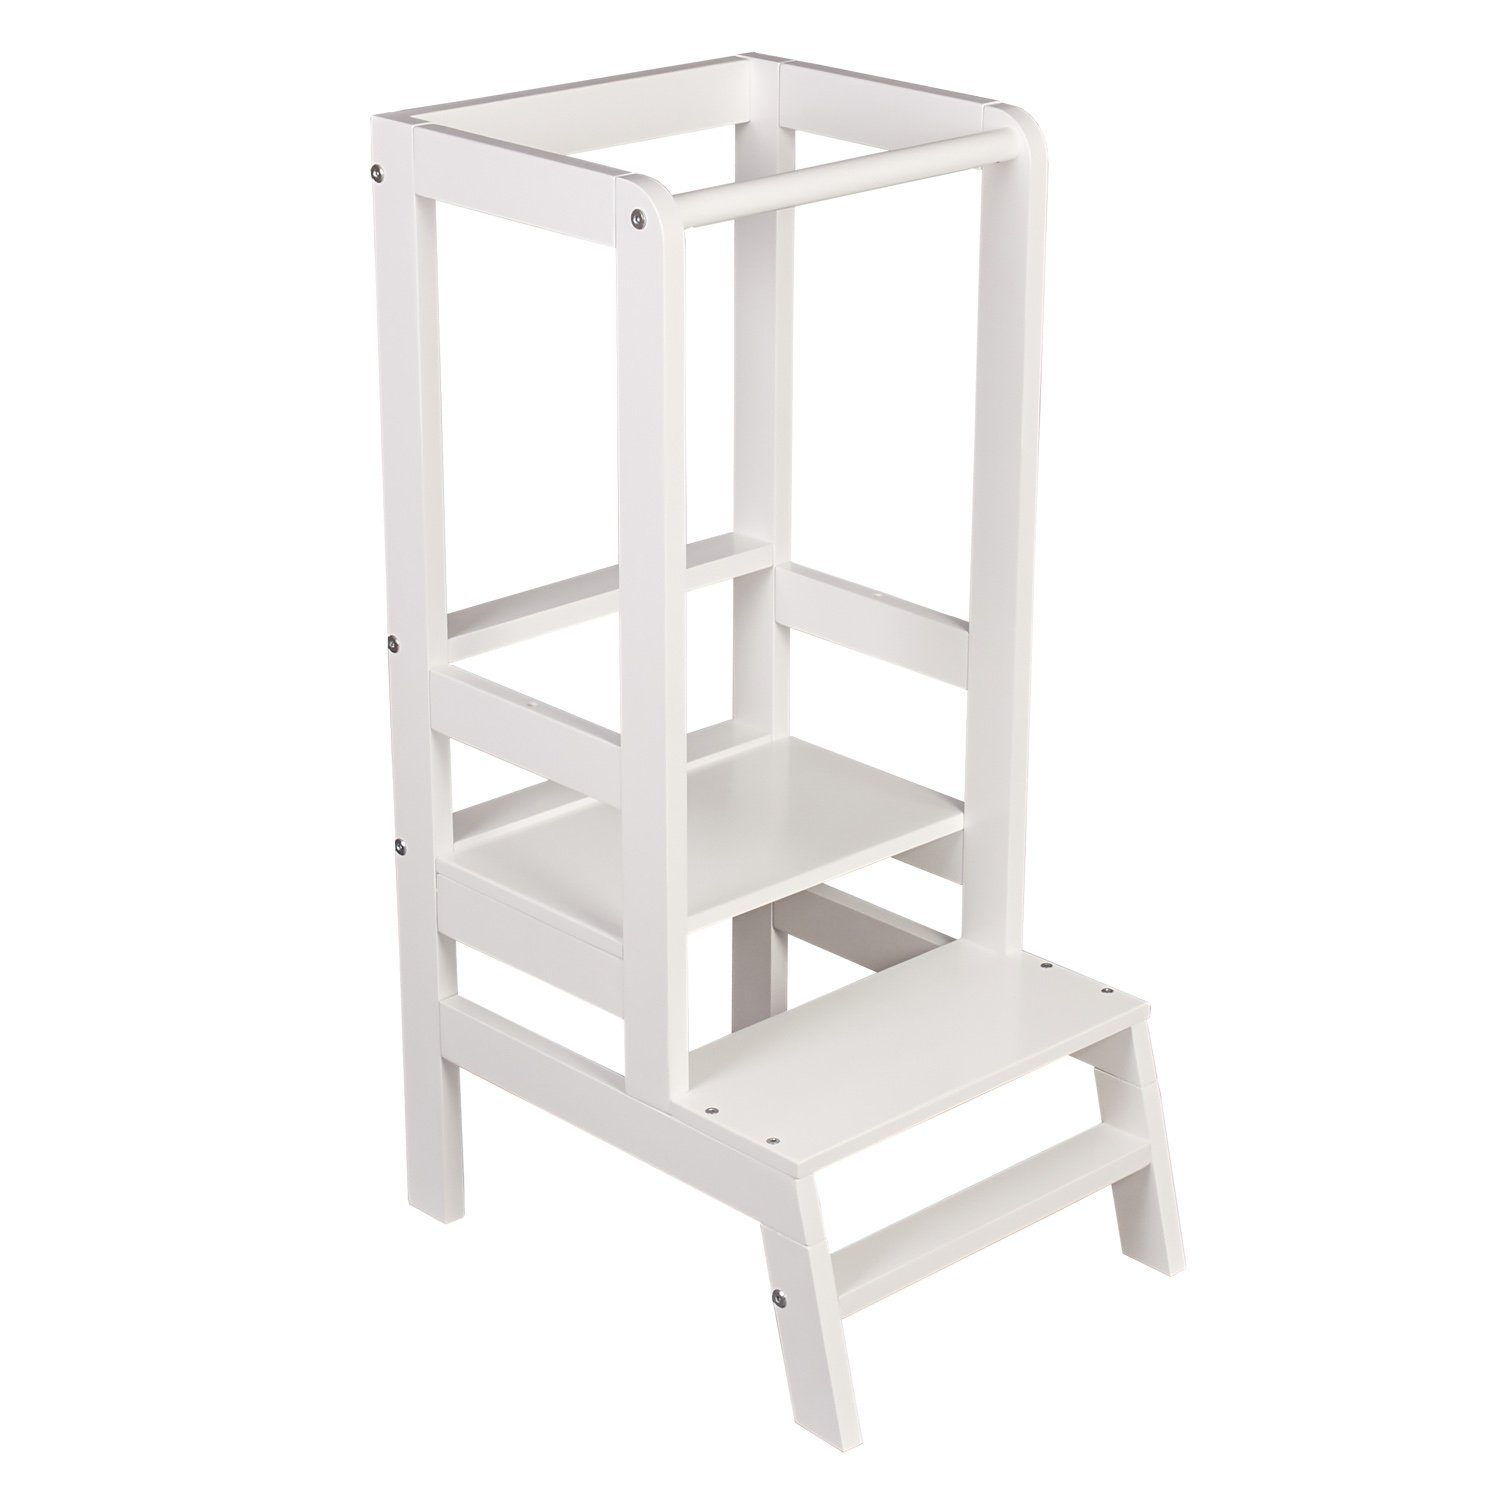 [Sonderpreis für begrenzte Zeit] Polini Home Kinderstuhl Po Massivholz Lernturm Lernstuhl lackiert mitwachsend Lerntower Weiß